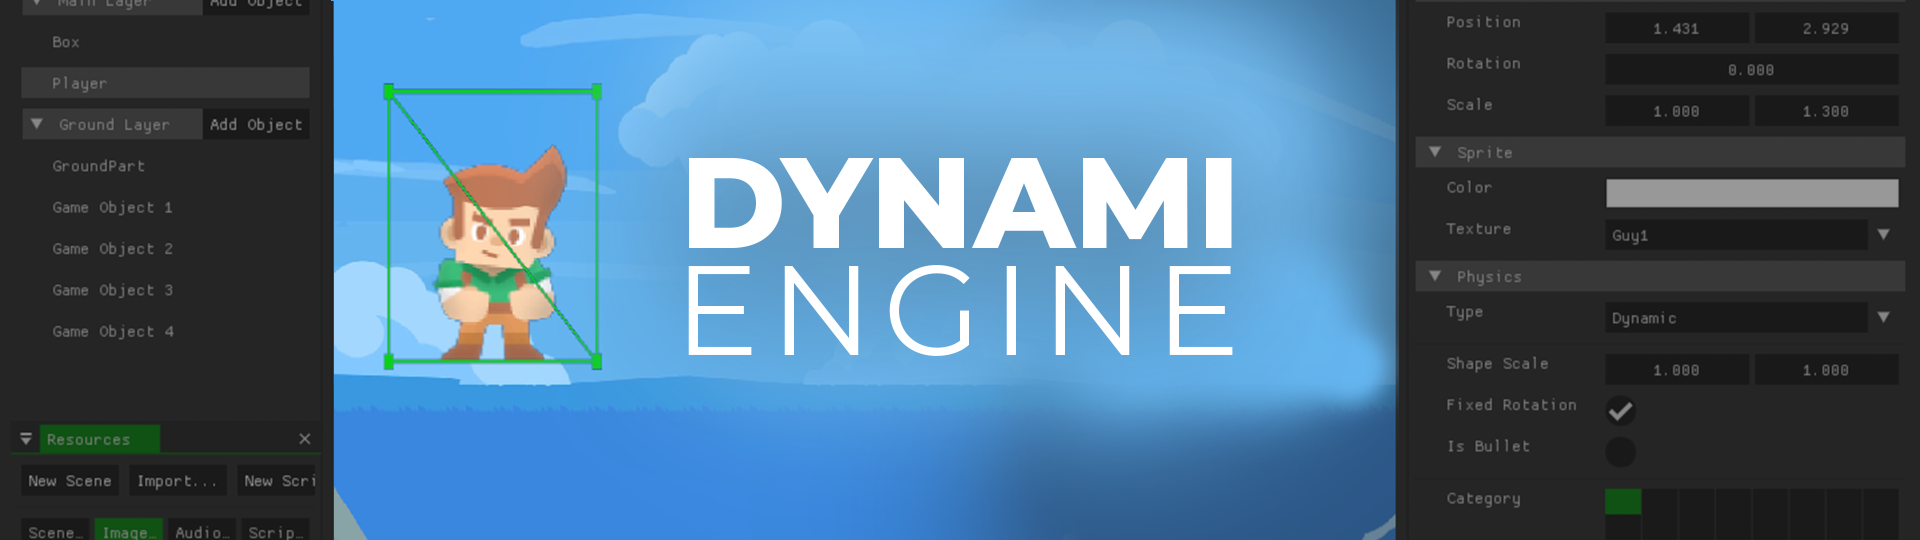 Dynami Engine